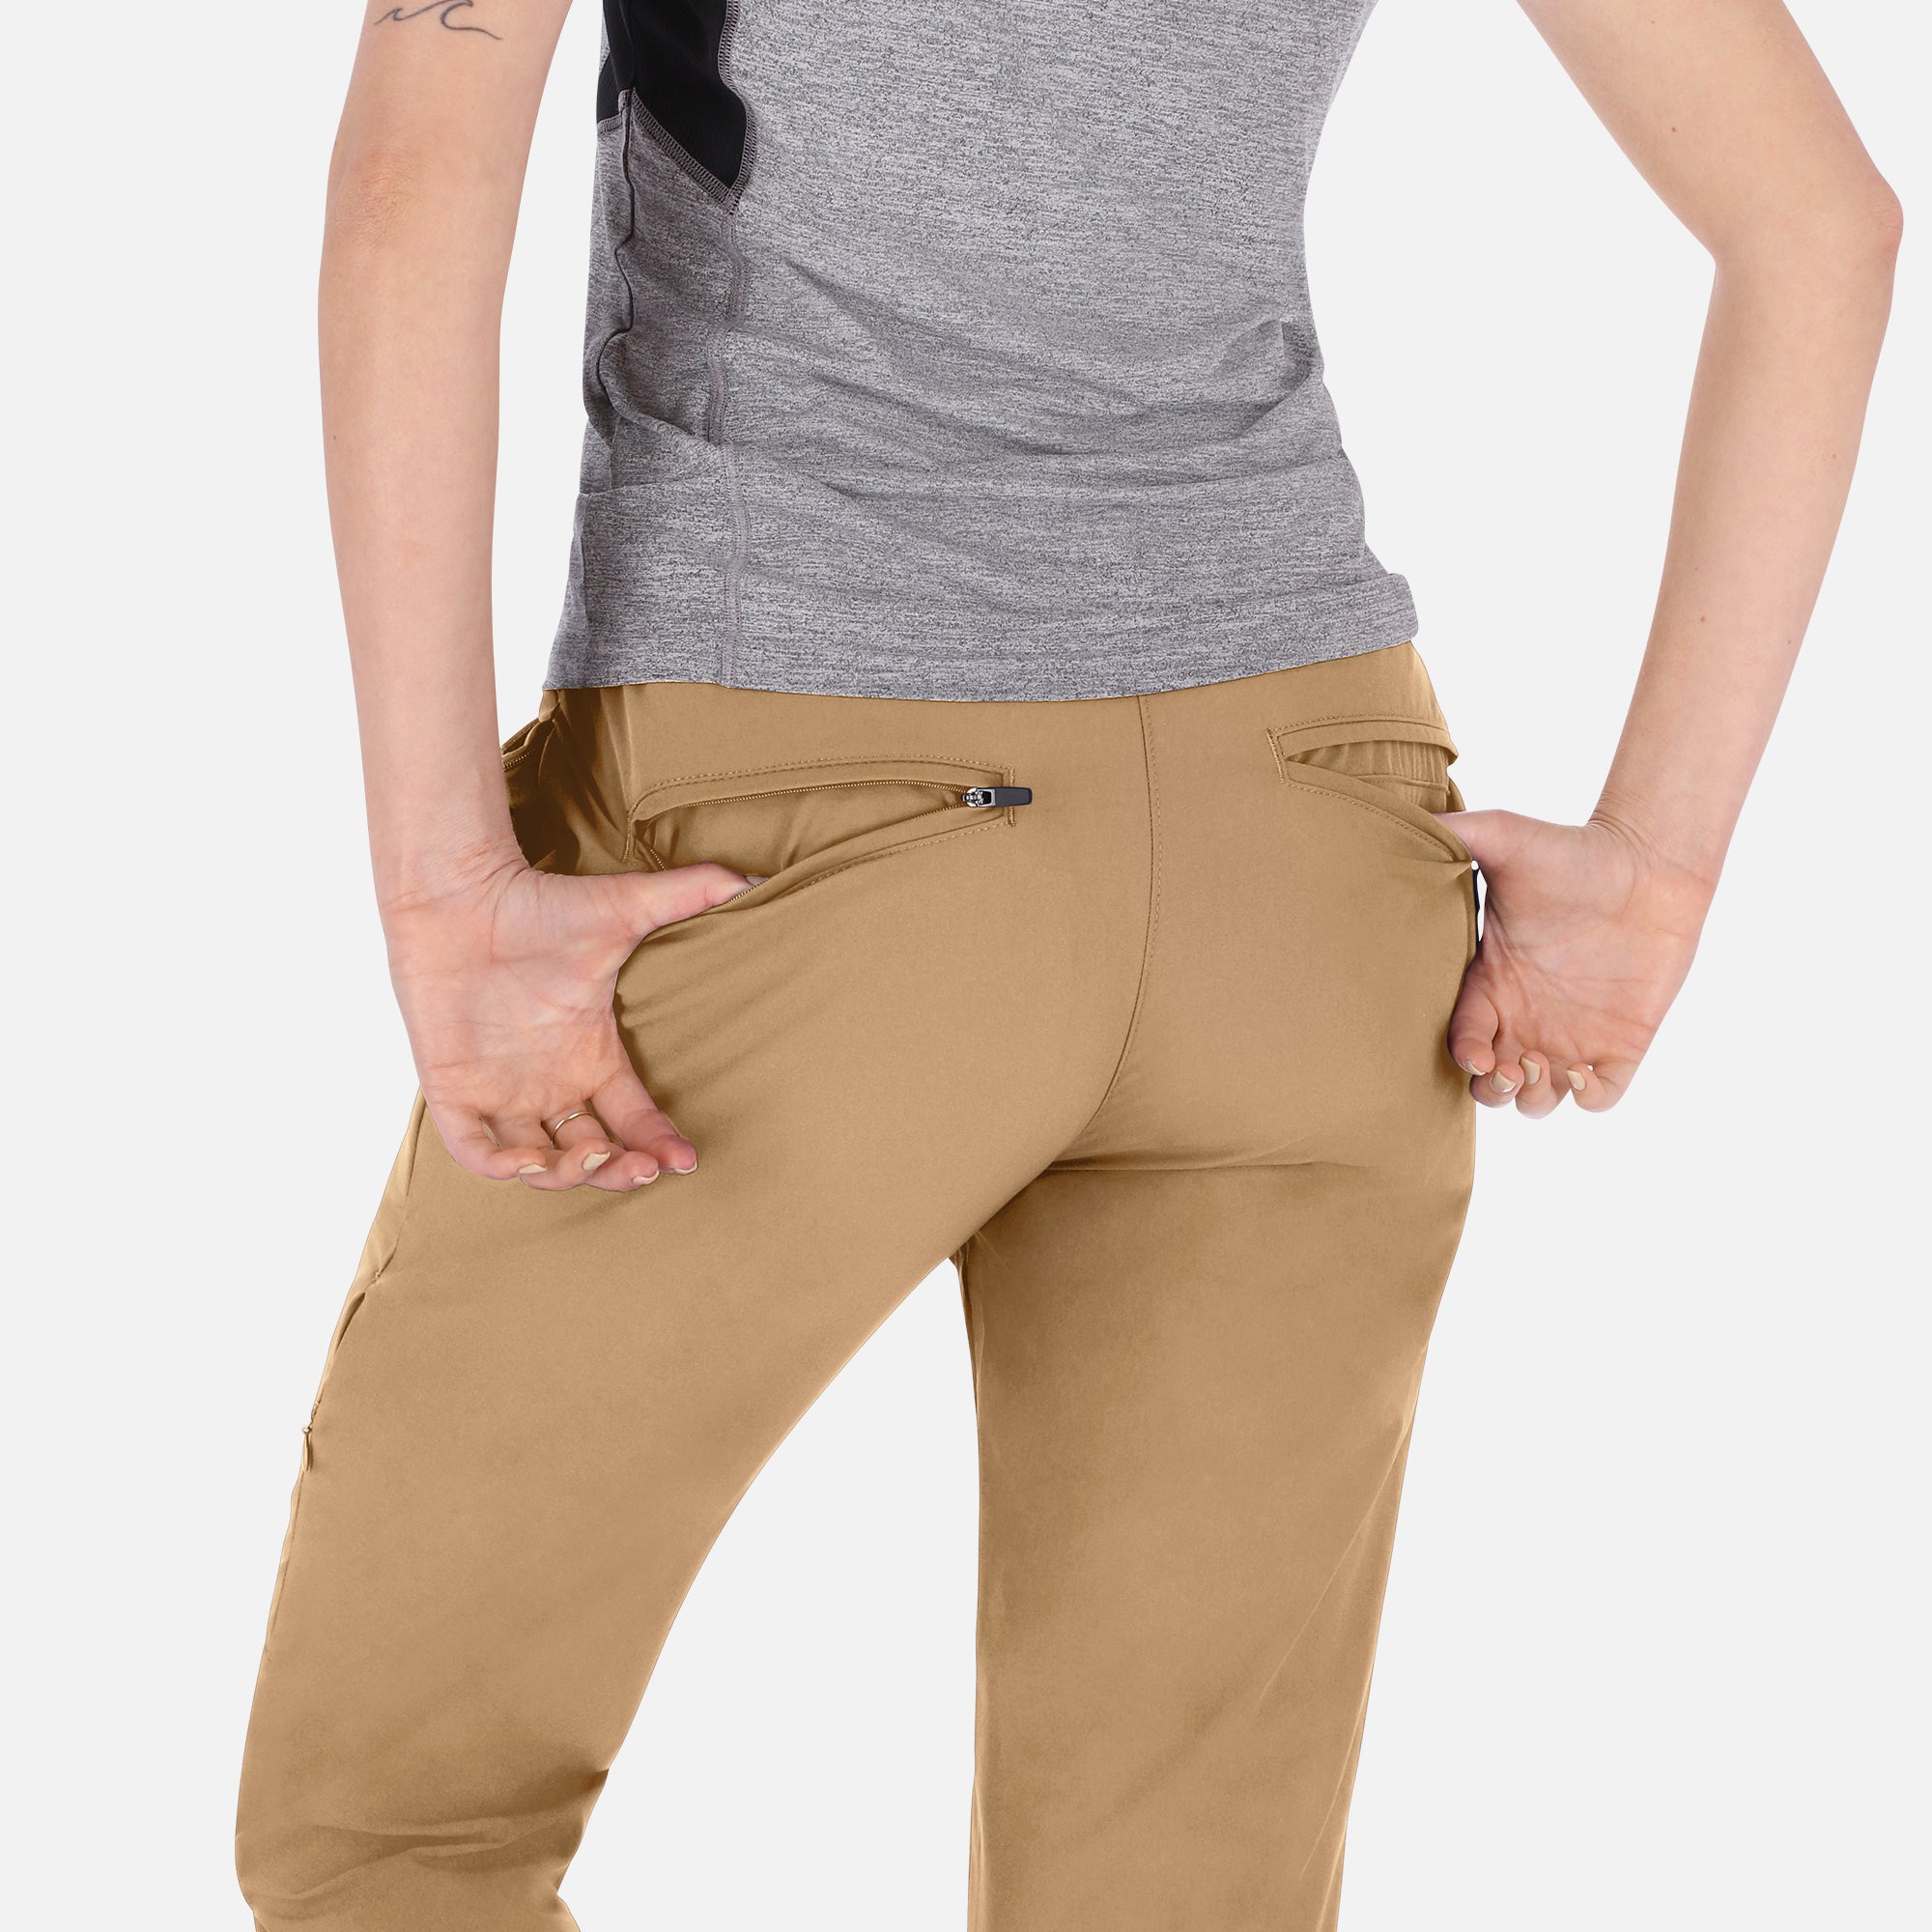 Women's Adventure Pants (Beige)